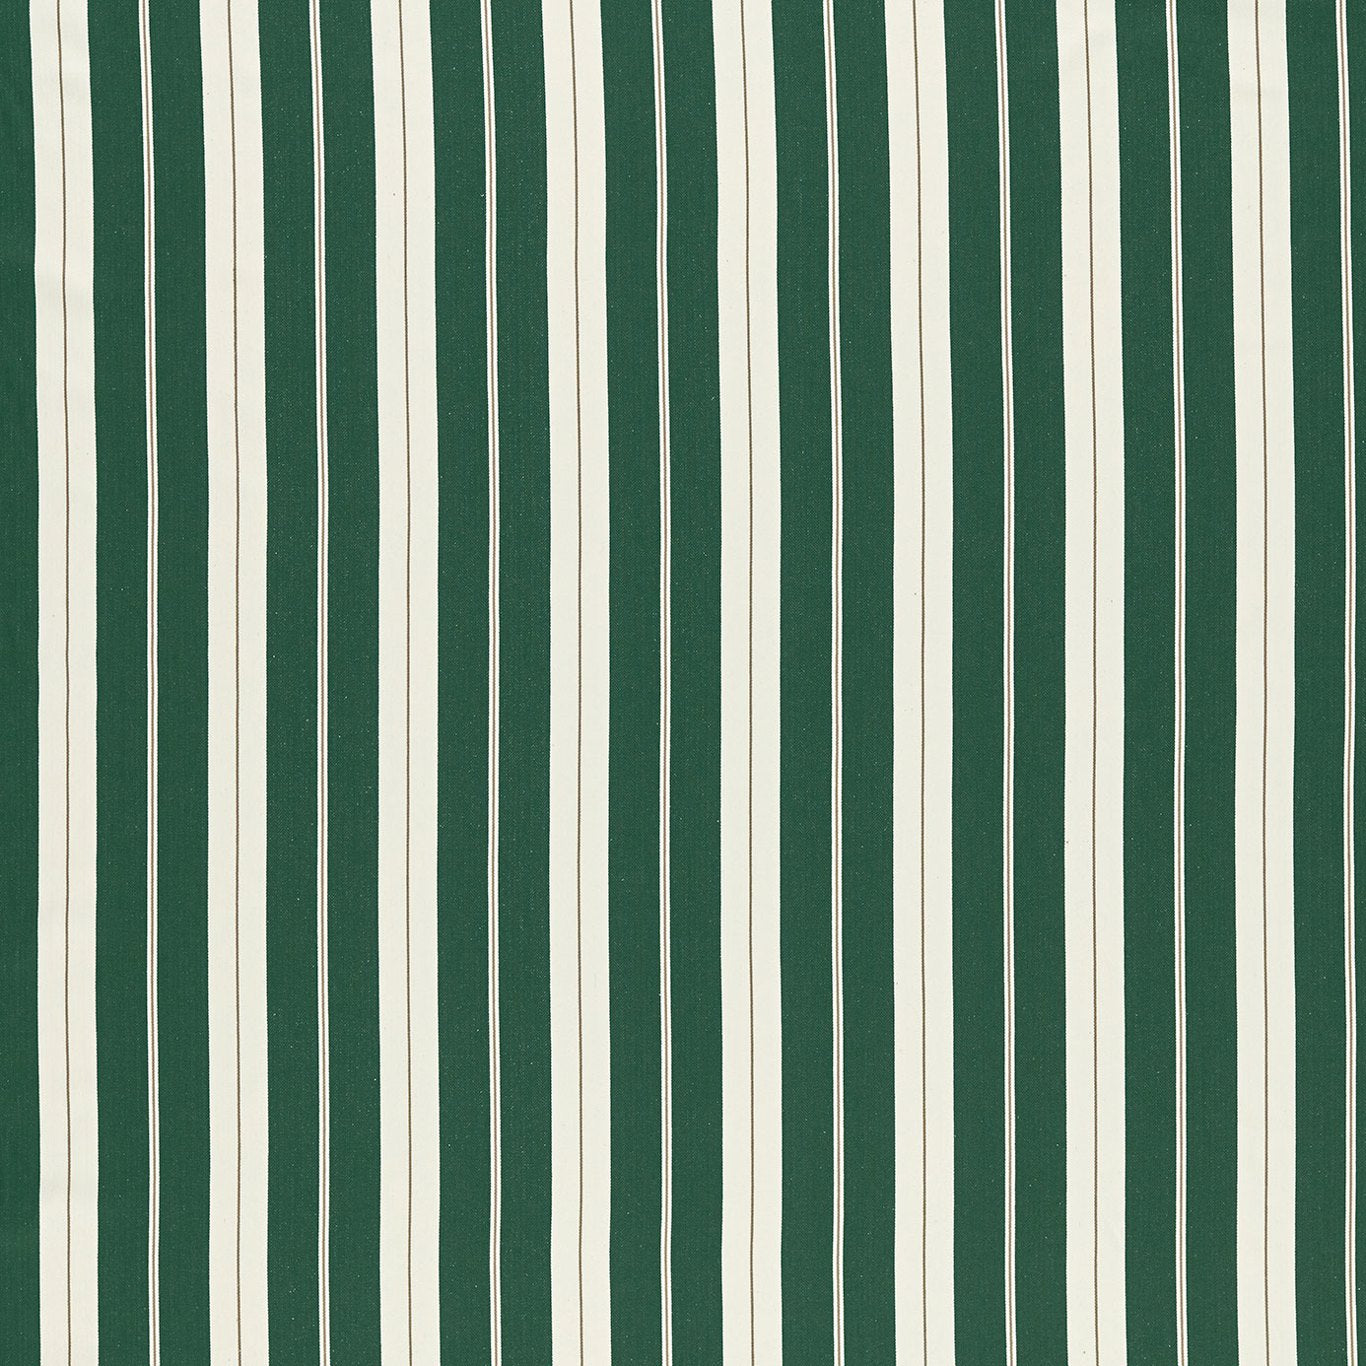 Belgravia Fabric by Clarke & Clarke - F1497/03 - Navy/Rouge